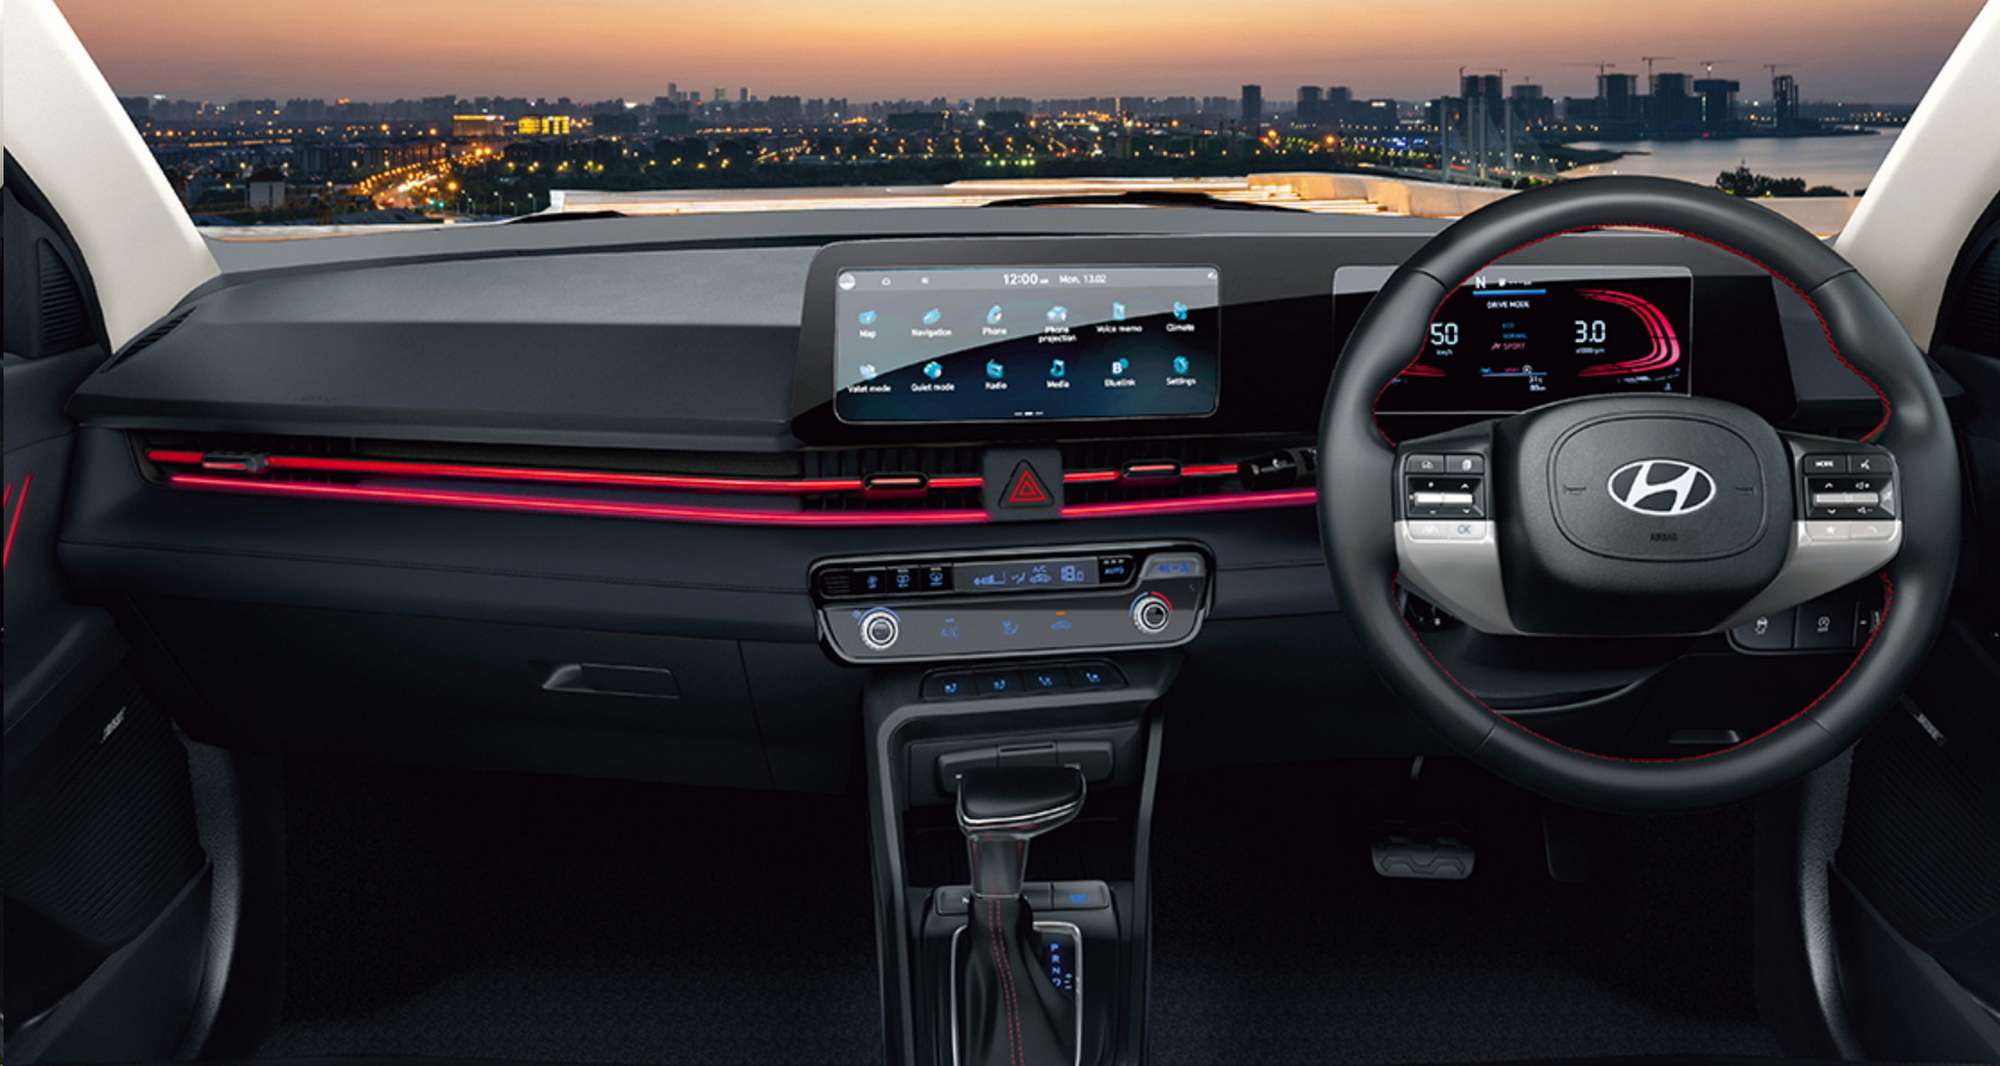 Thiết kế nội thất tinh tế của xe Hyundai Accent 8